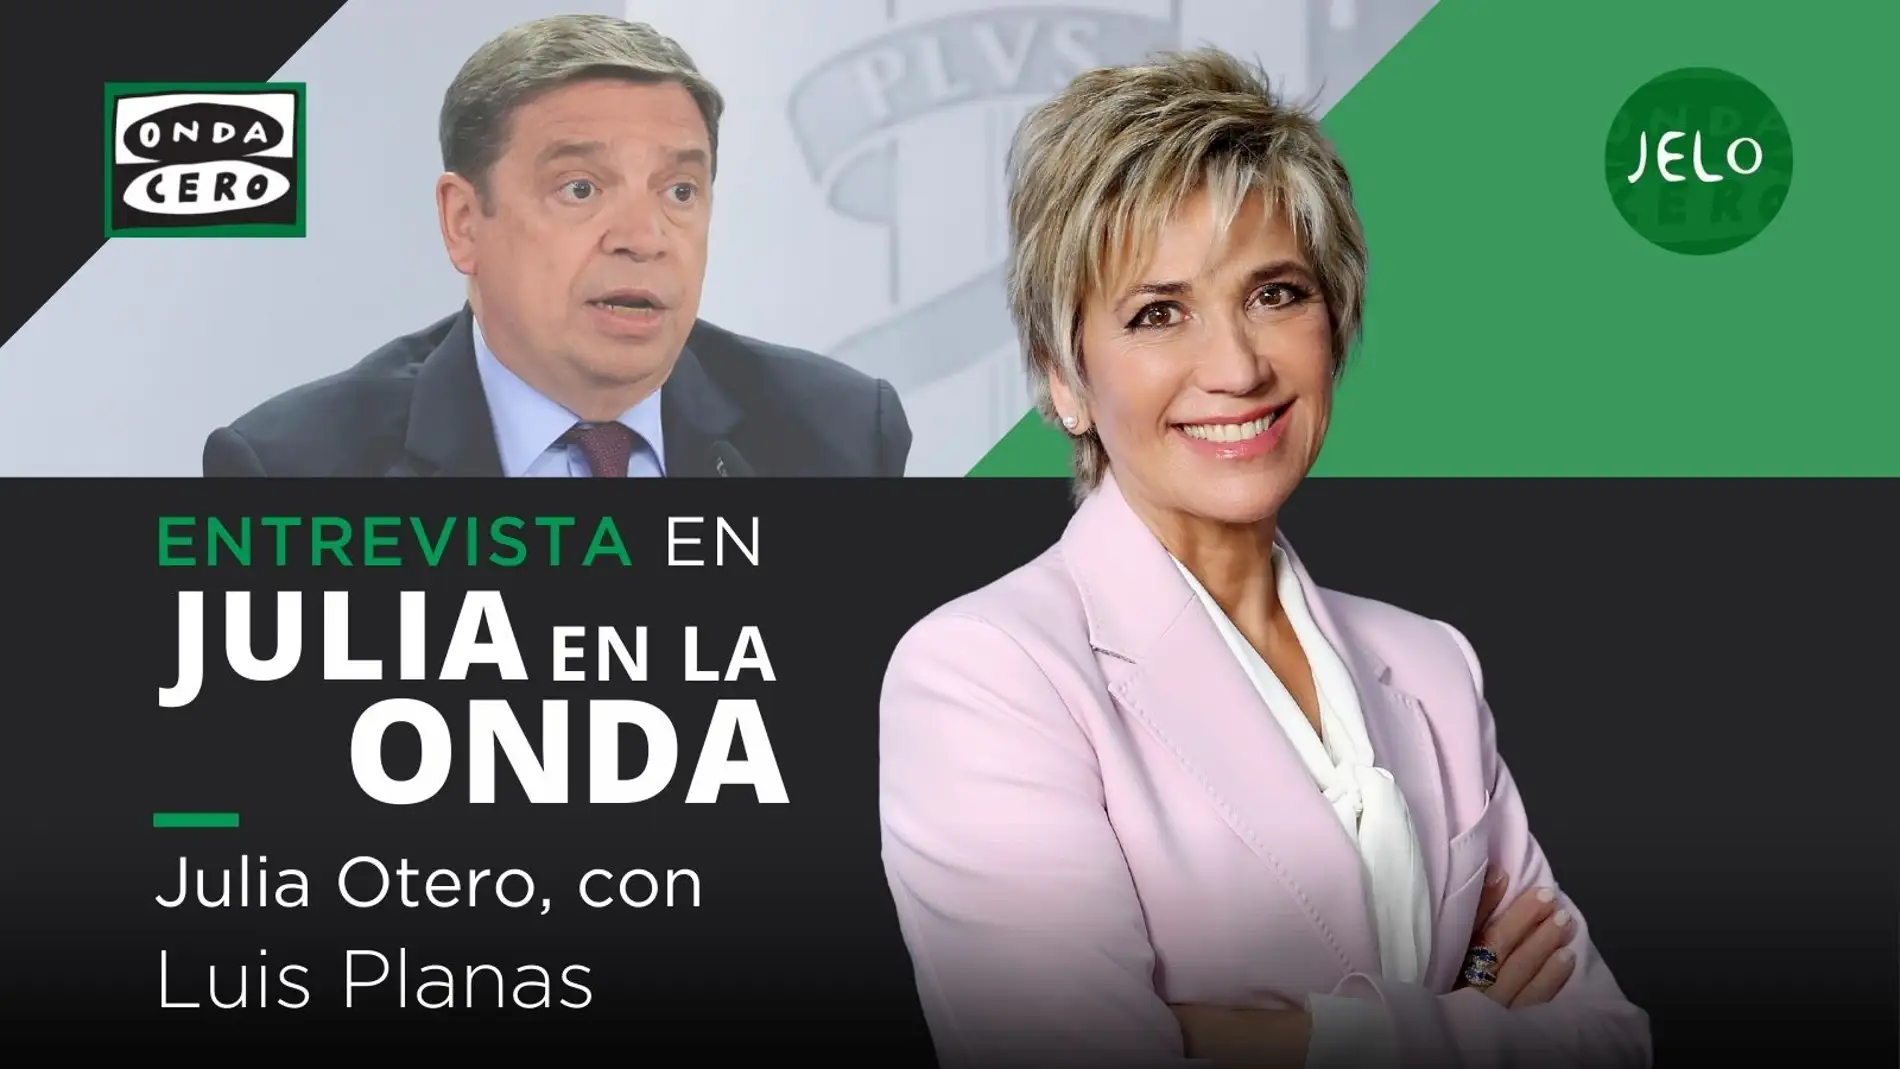 Julia Otero entrevista a Luis Planas este jueves en 'Julia en la onda' | ondacero.es